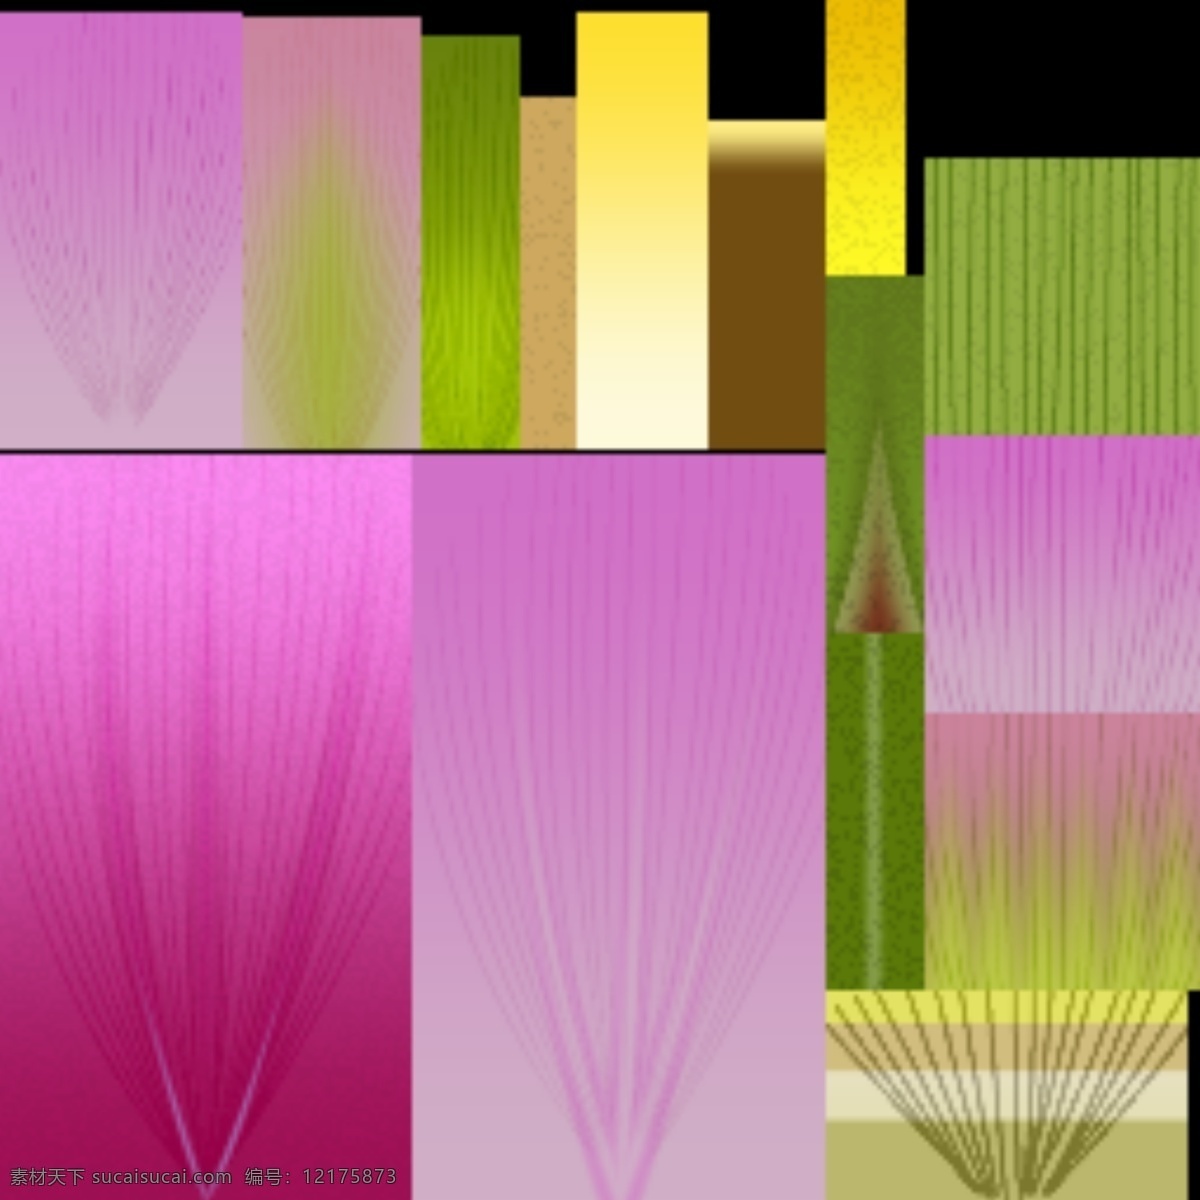 3d 花草 模型 室外 植物 有贴图 max2009 草本花卉 3d模型素材 家具模型